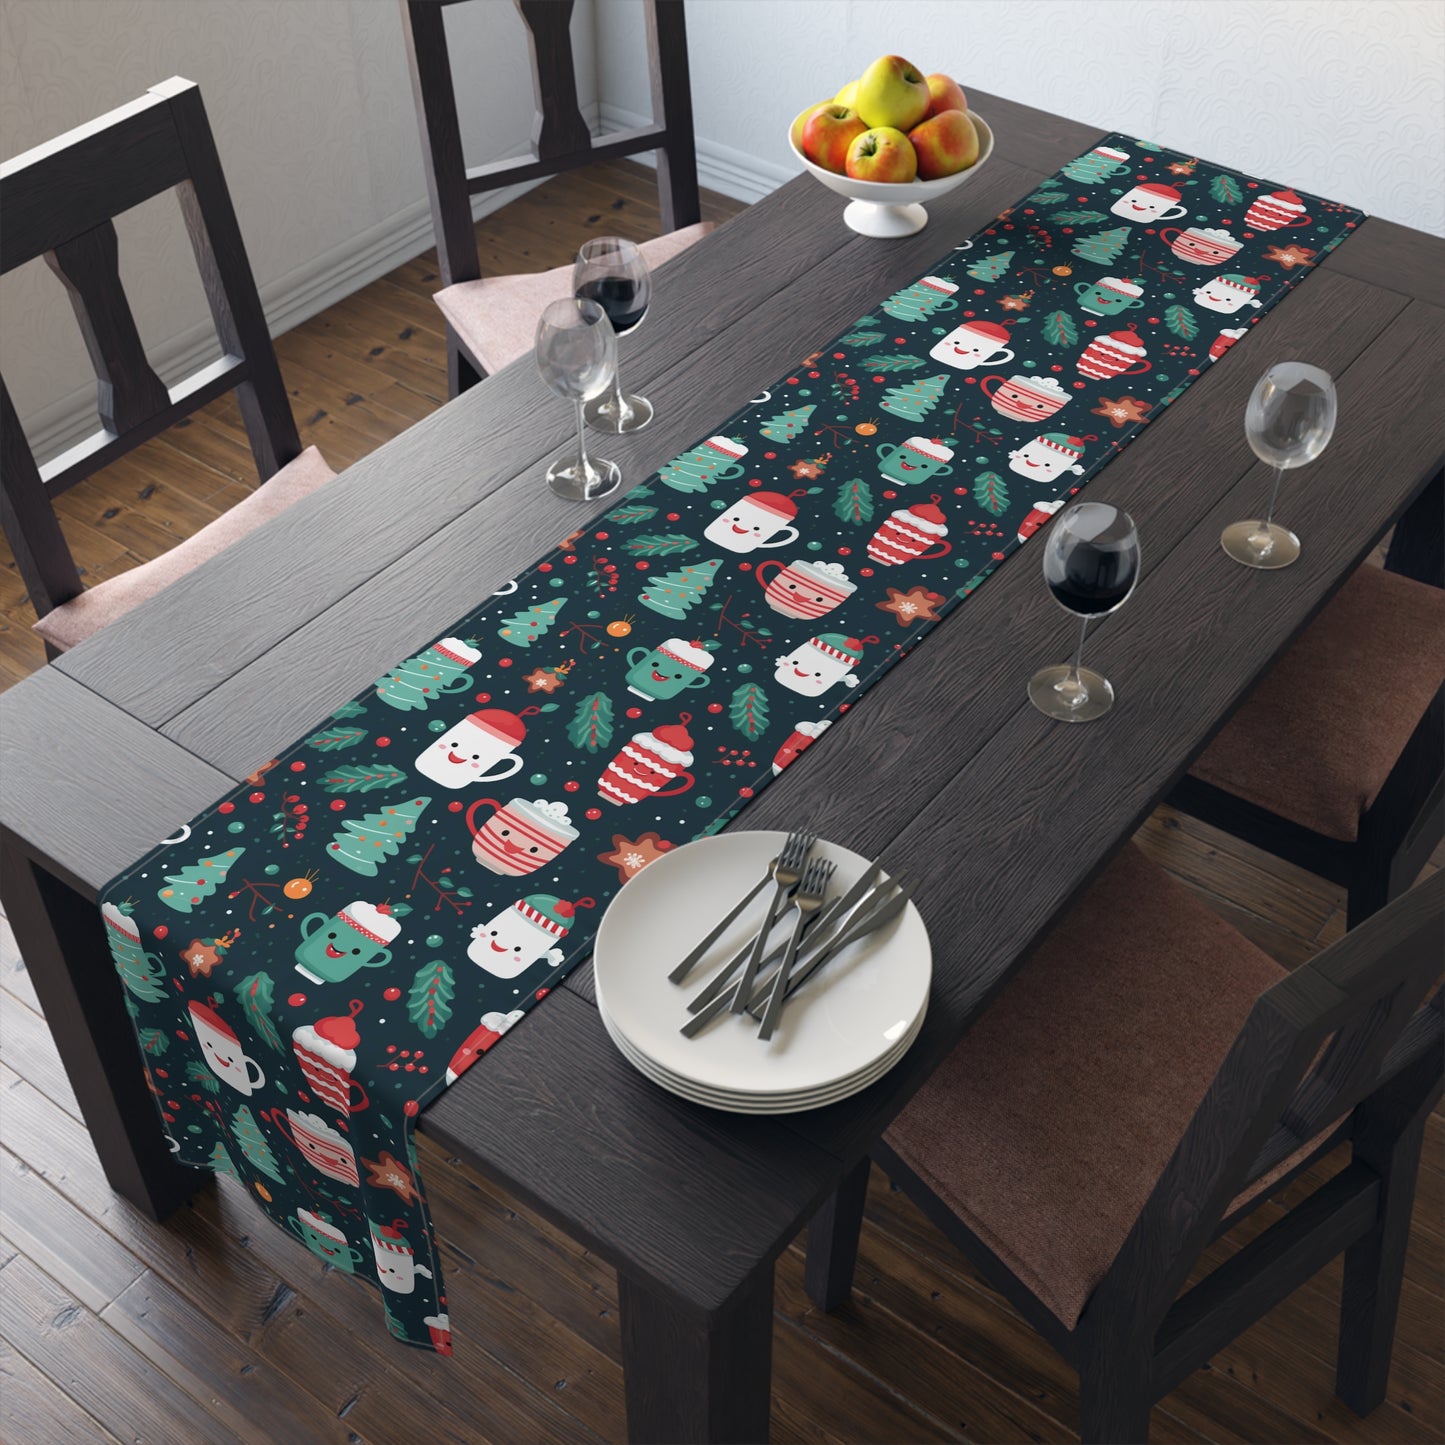 Kawaii Christmas Table Runner, Cute Holiday Decoration, Table Cloth Decor